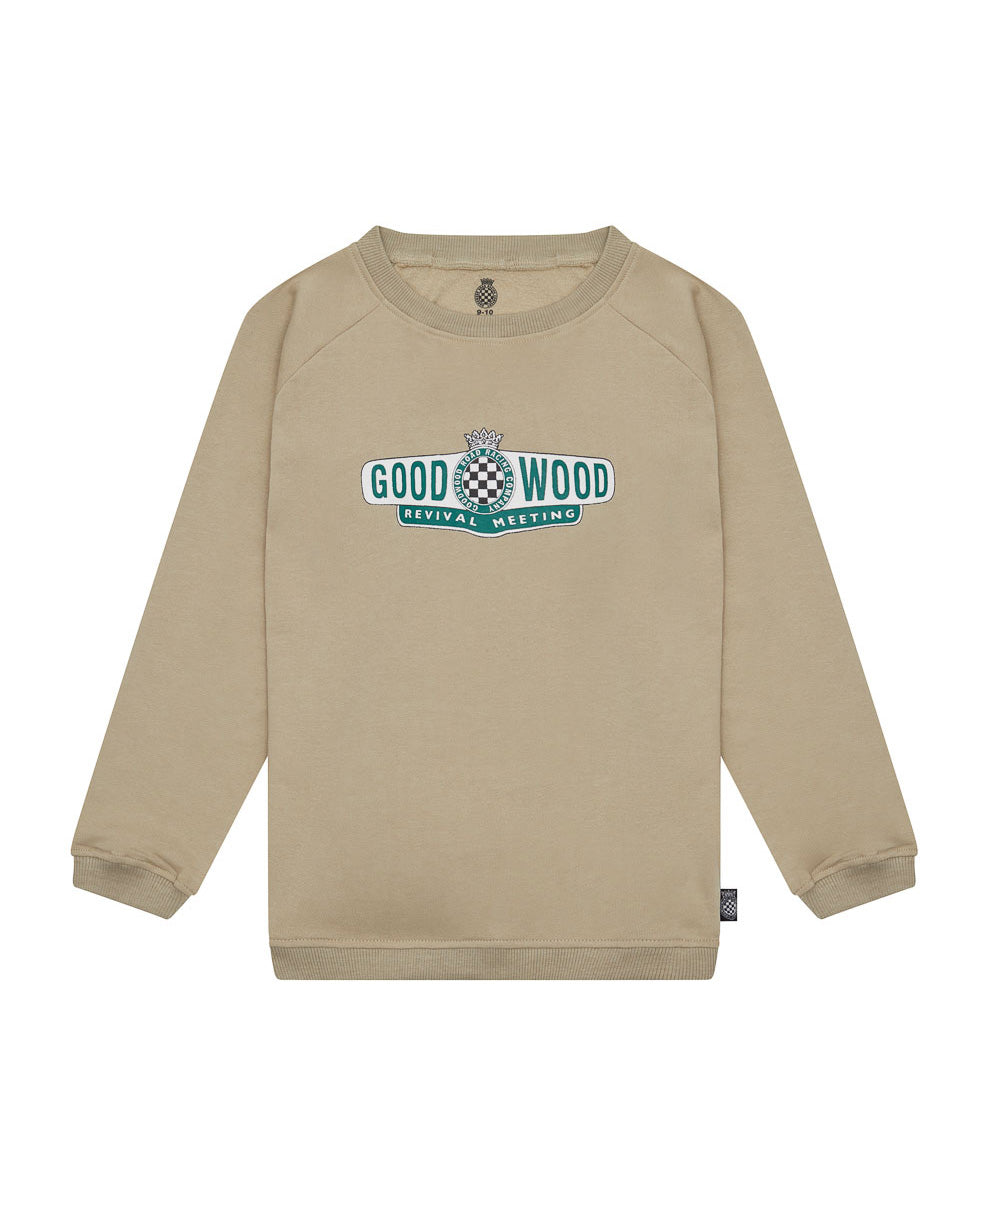 Goodwood Revival Logo Childrens Sweatshirt Beige